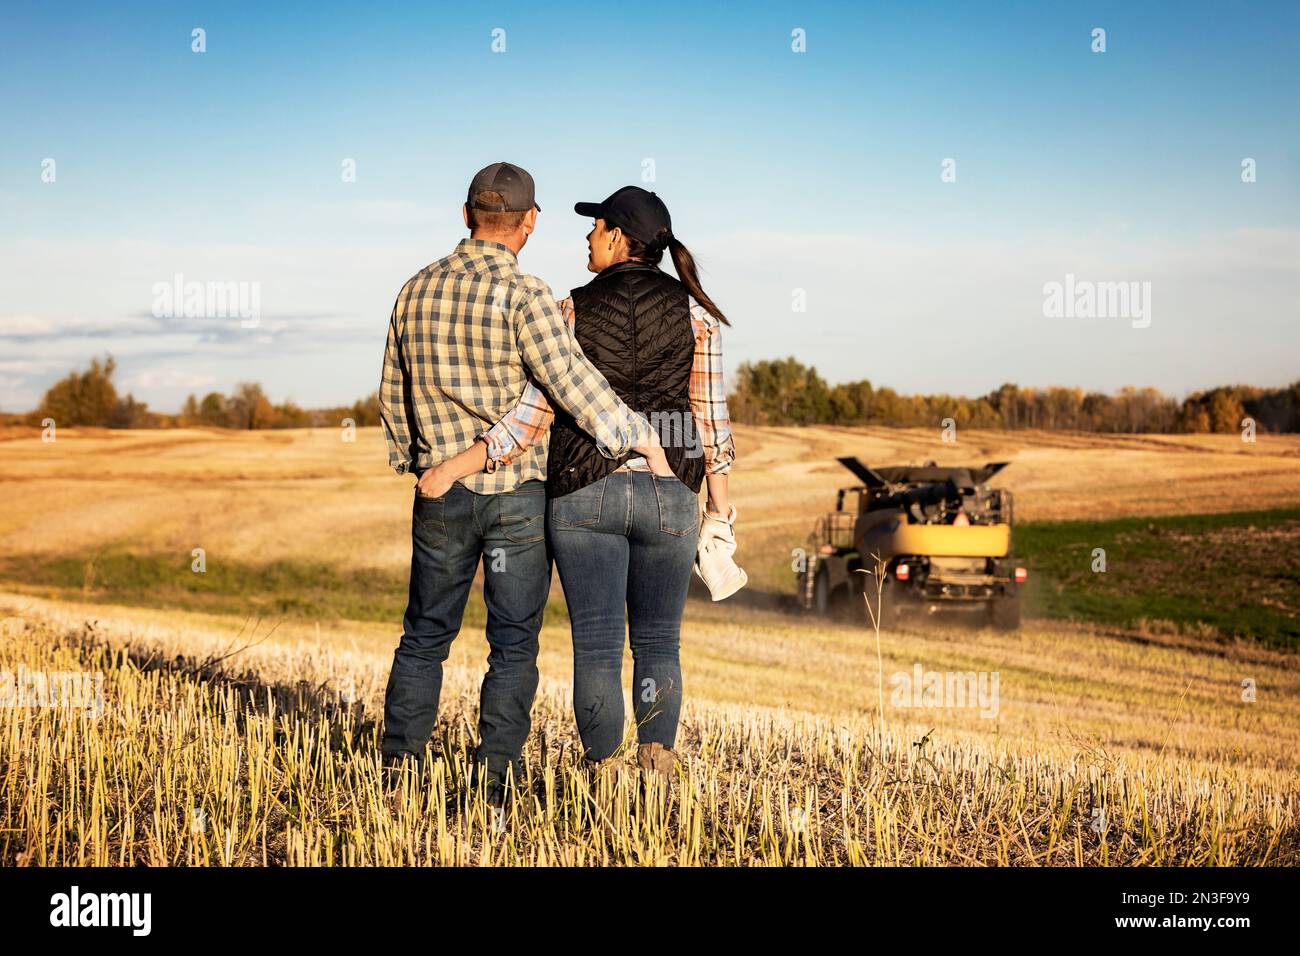 Ein Blick von hinten auf einen Mann und eine Frau, die auf einem Feld stehen und eine gute Zeit miteinander verbringen, während sie einen Mähdrescher beobachten, der ihren Herbst beendet... Stockfoto